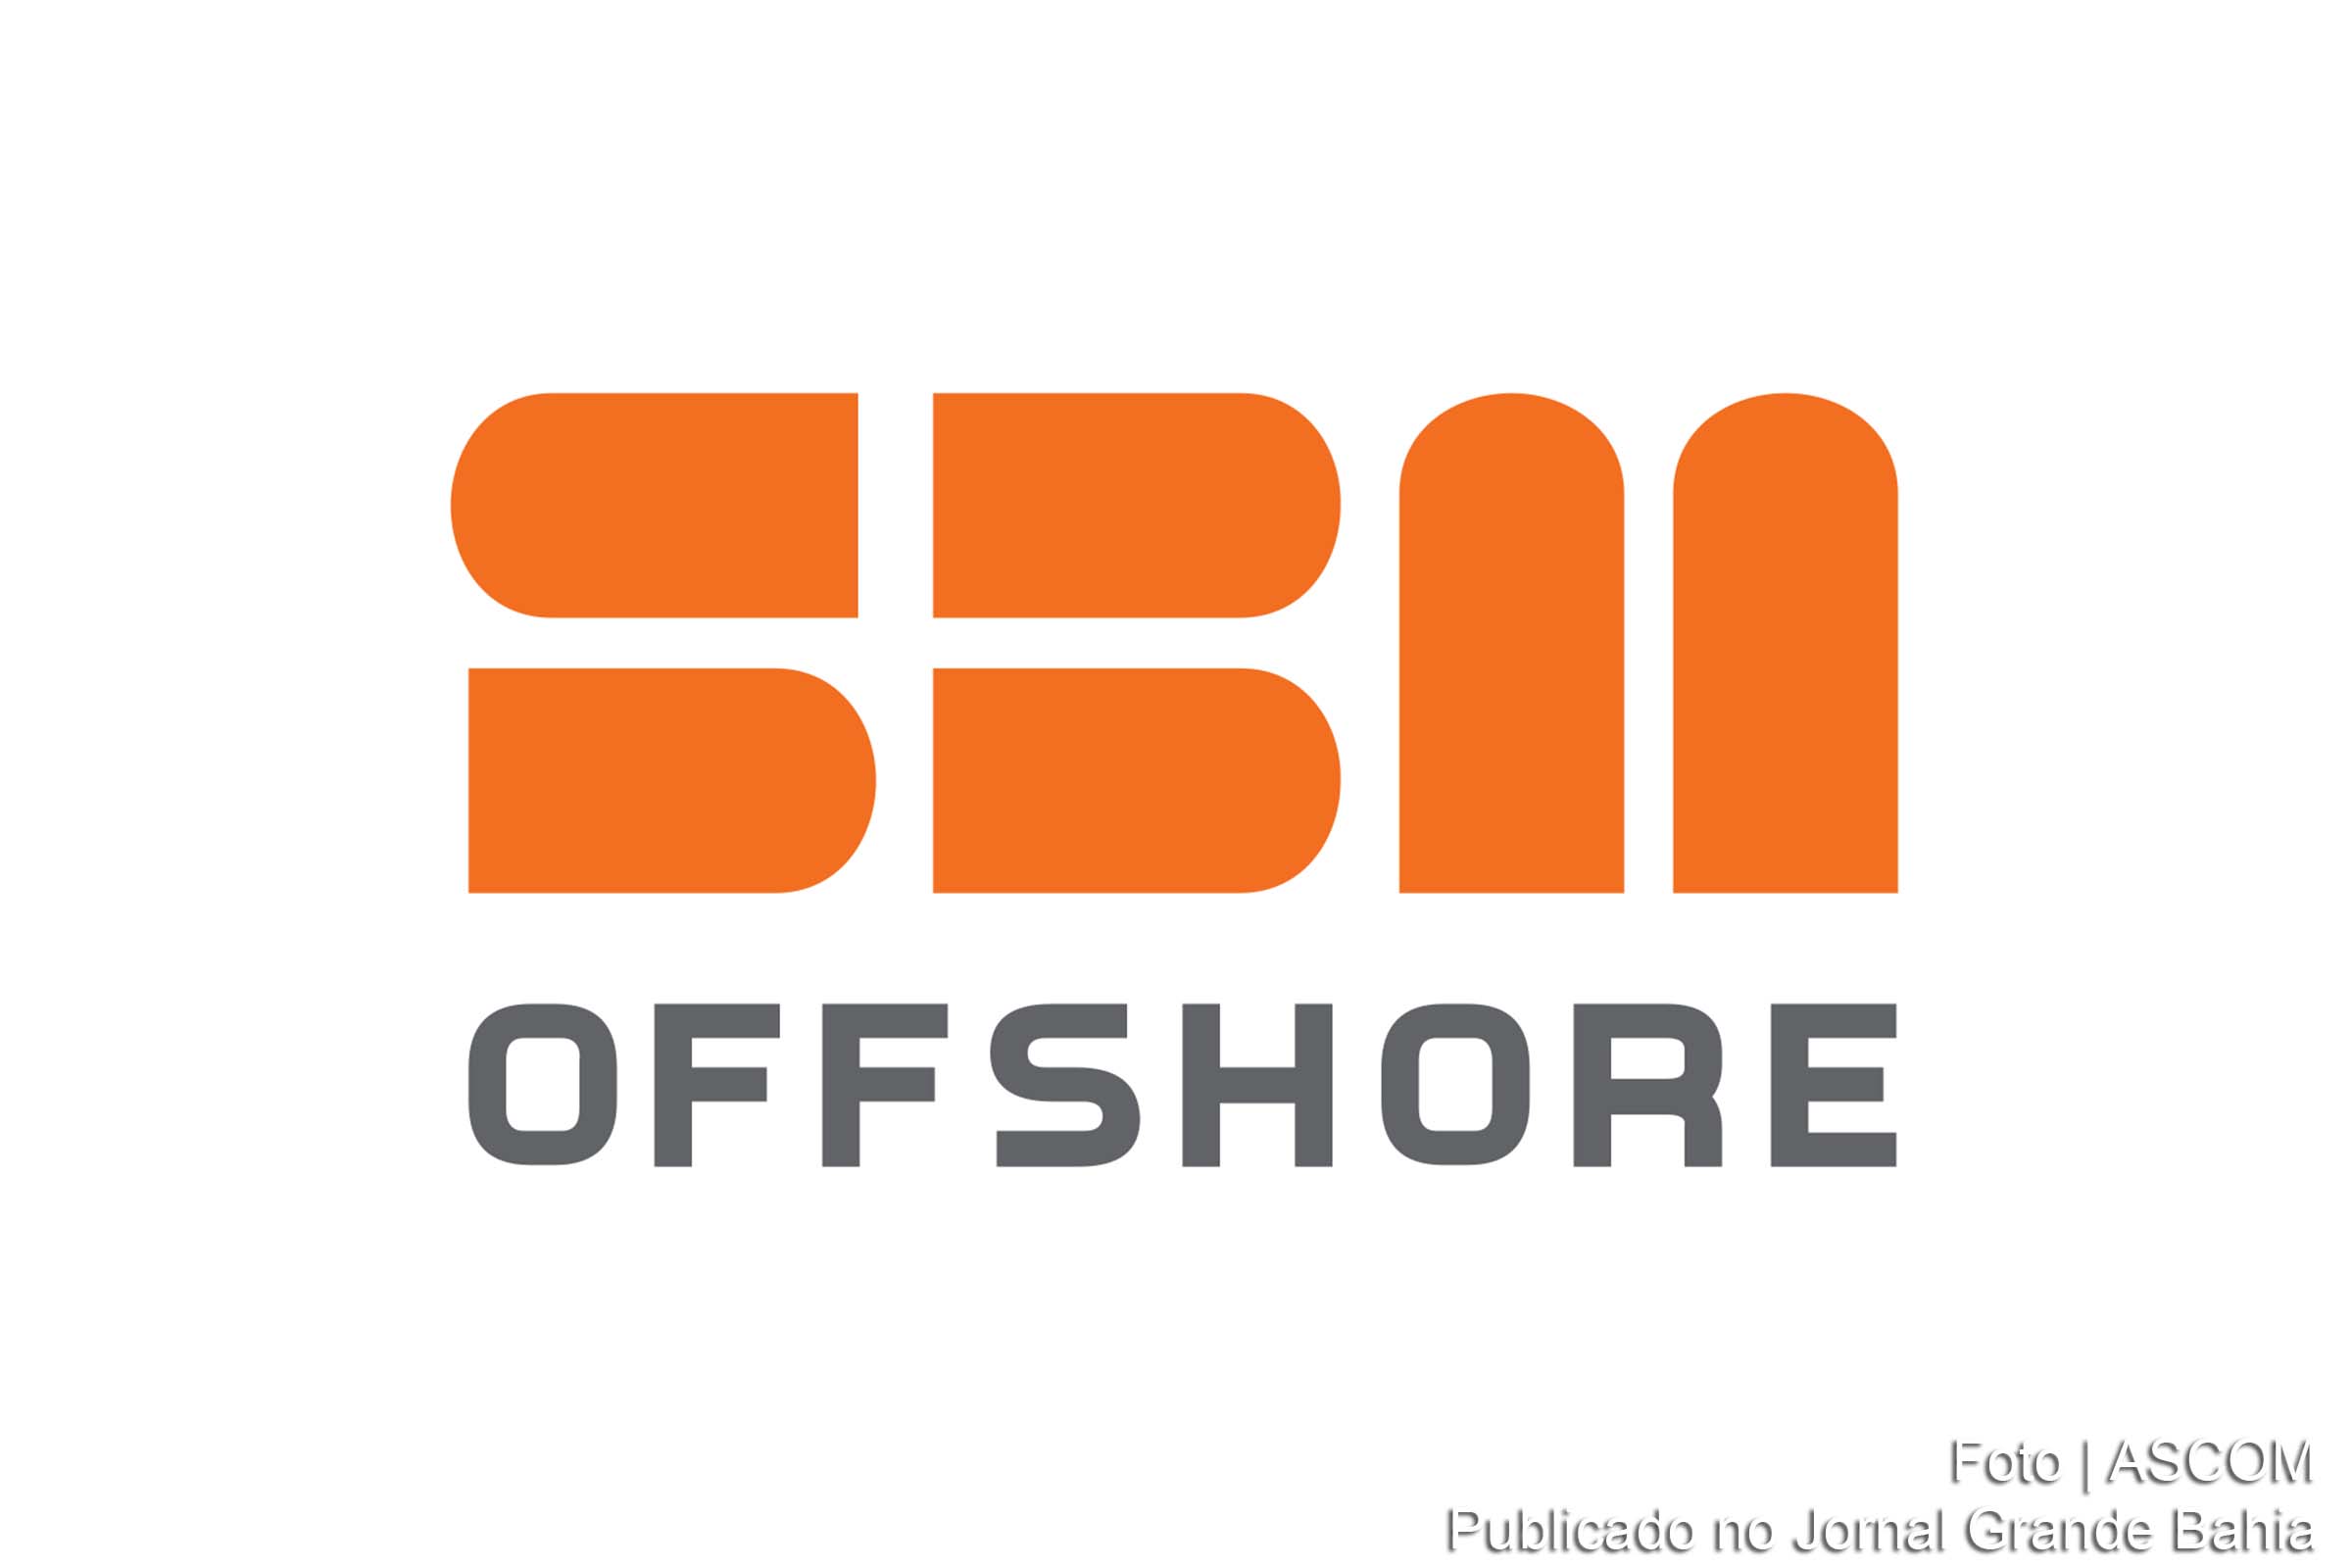 SBM Offshore N.V. (Euronext: SBMO) é um grupo empresarial holandês que presta serviços para a indústria petrolífera. Originalmente chamado IHC Caland N.V., mudou sua denominação em julho de 2005.